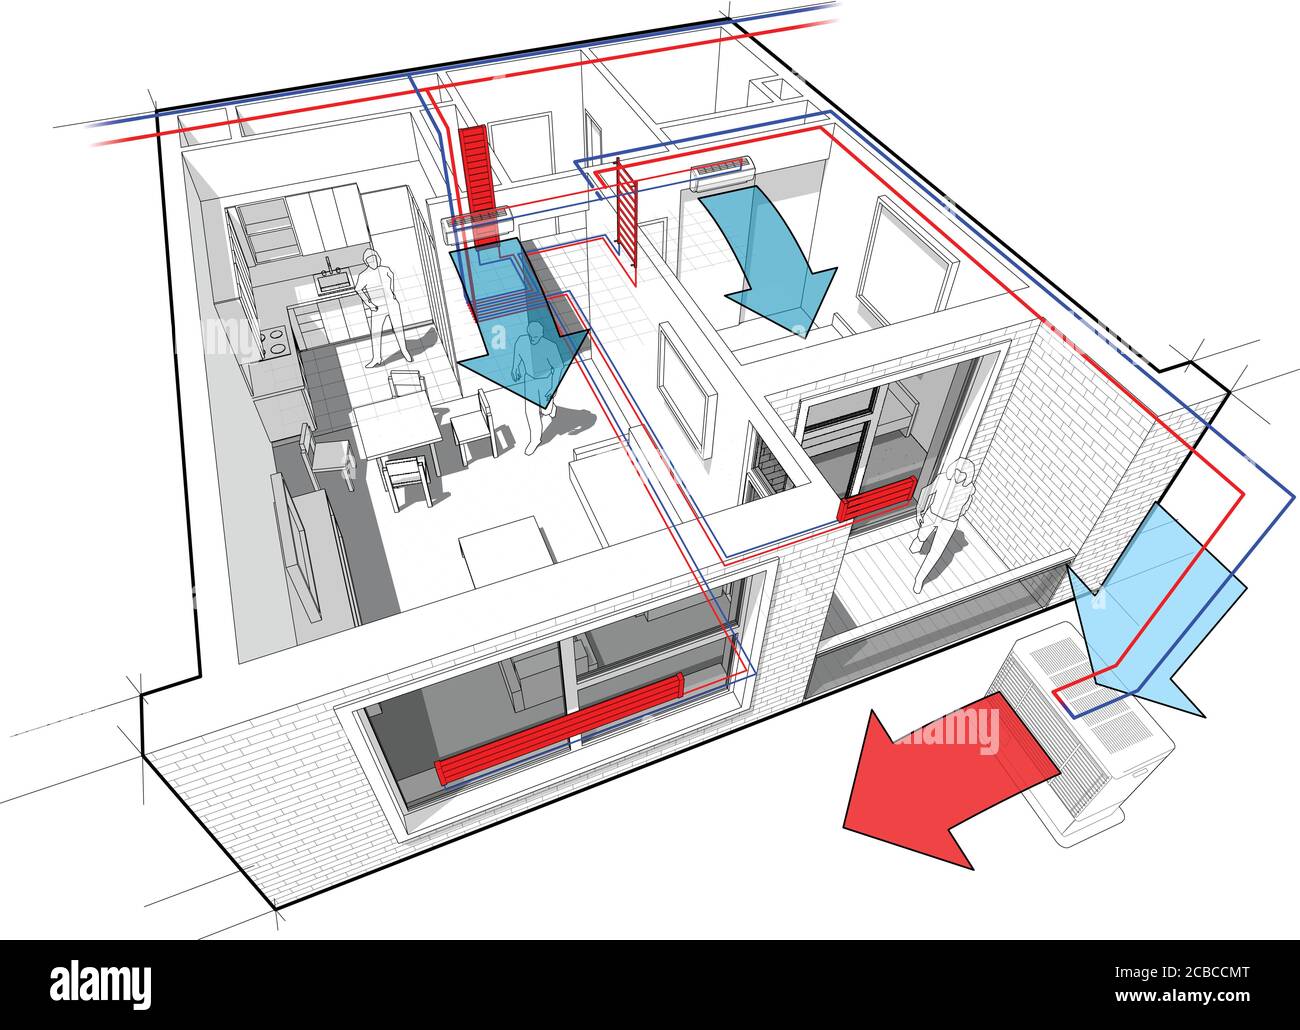 Perspektivische Cutaway-Diagramm einer Wohnung mit einem Schlafzimmer komplett möbliert Mit Warmwasserheizkörper Heizung und Zentralheizung Rohre Stock Vektor